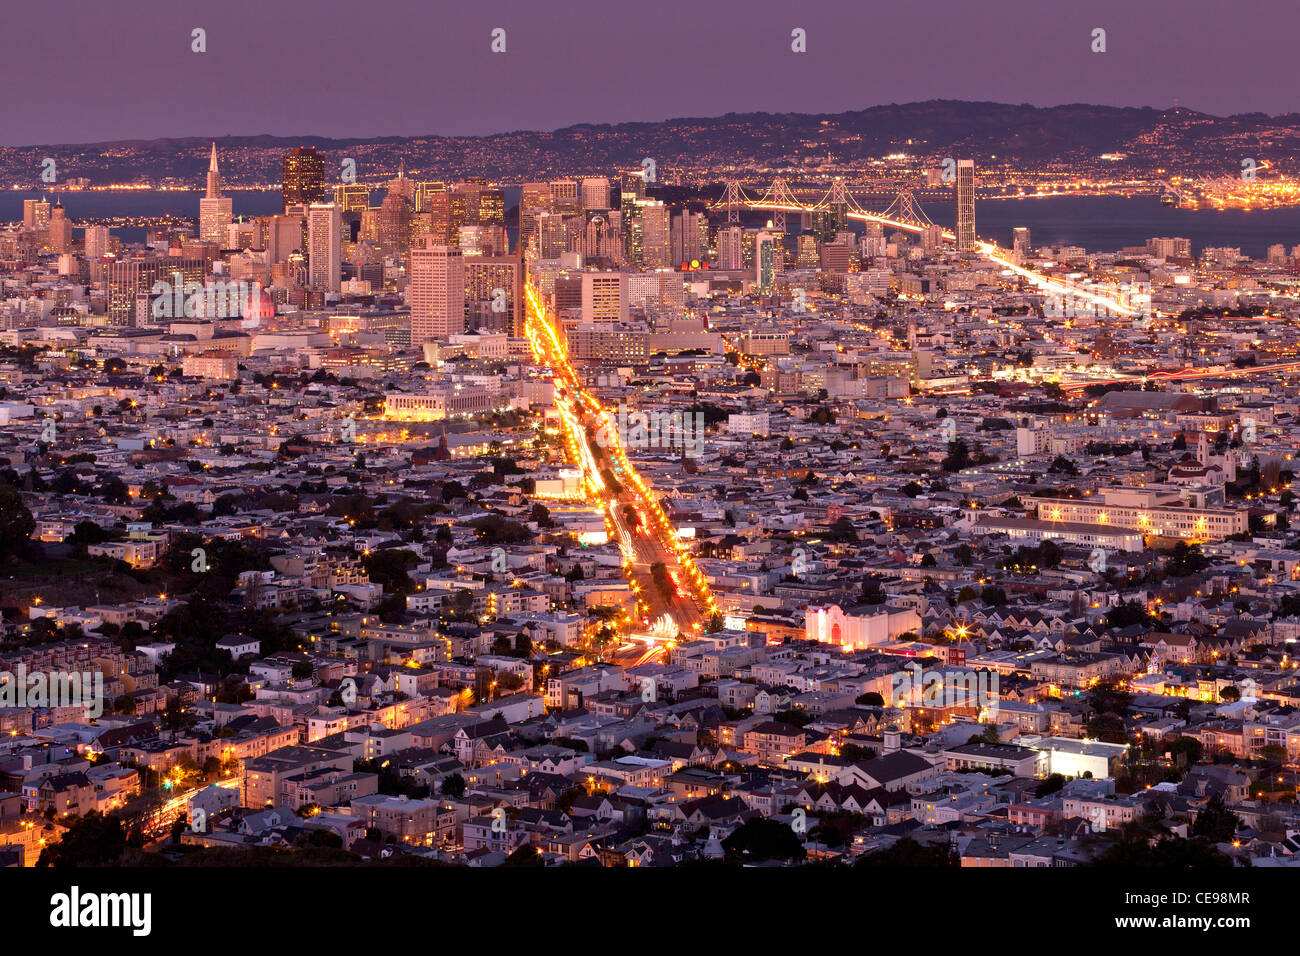 El centro de San Francisco la noche desde arriba Foto de stock